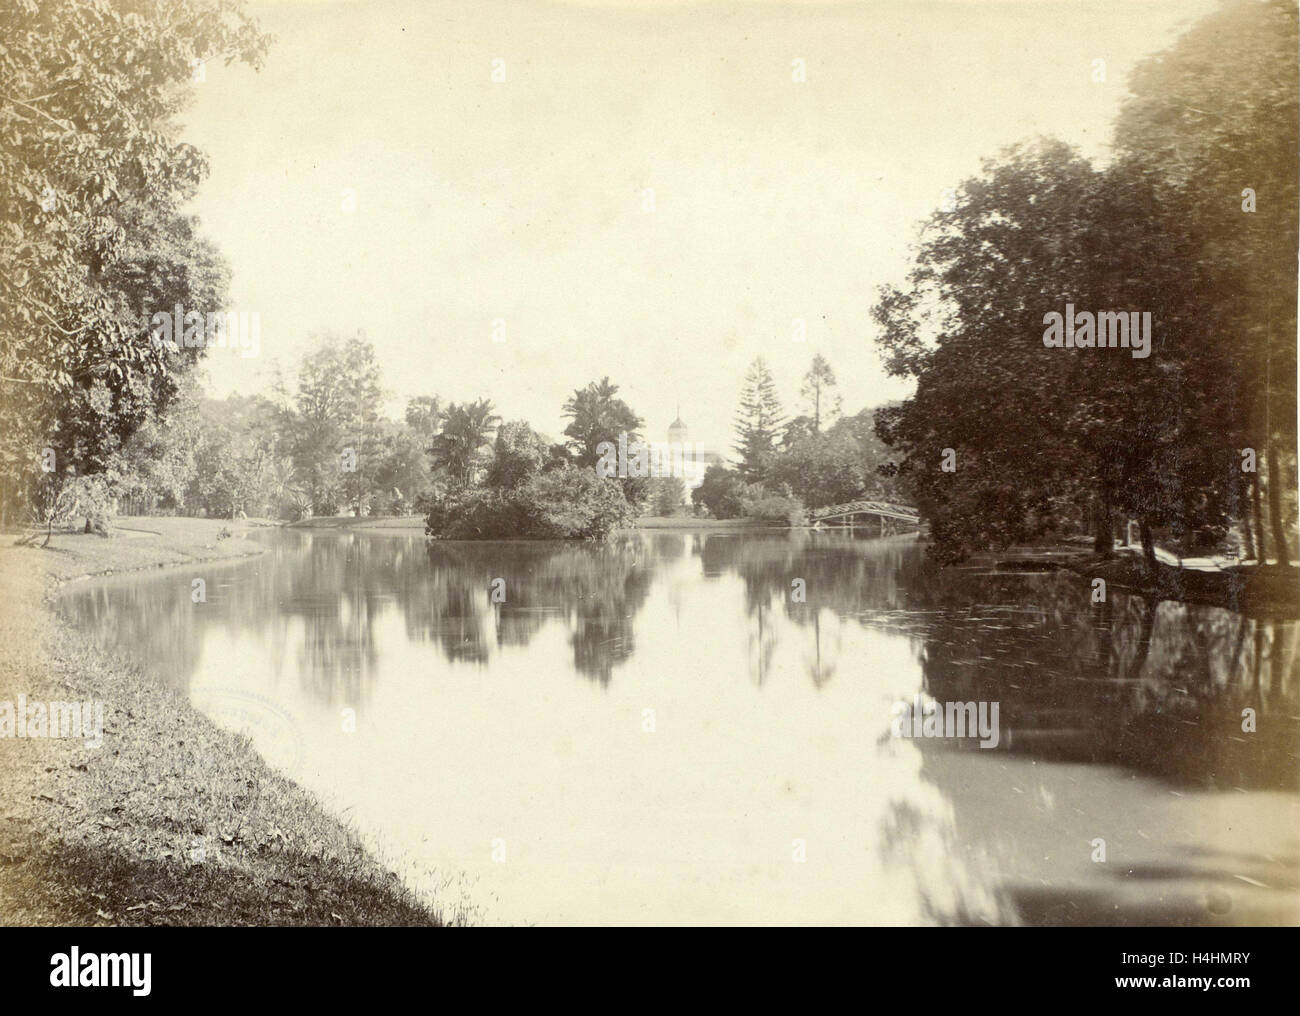 Acqua nelle Indie orientali olandesi alla fine con un ponte e un campanile di una chiesa, anonimo, c. 1895 - c. 1905 Foto Stock